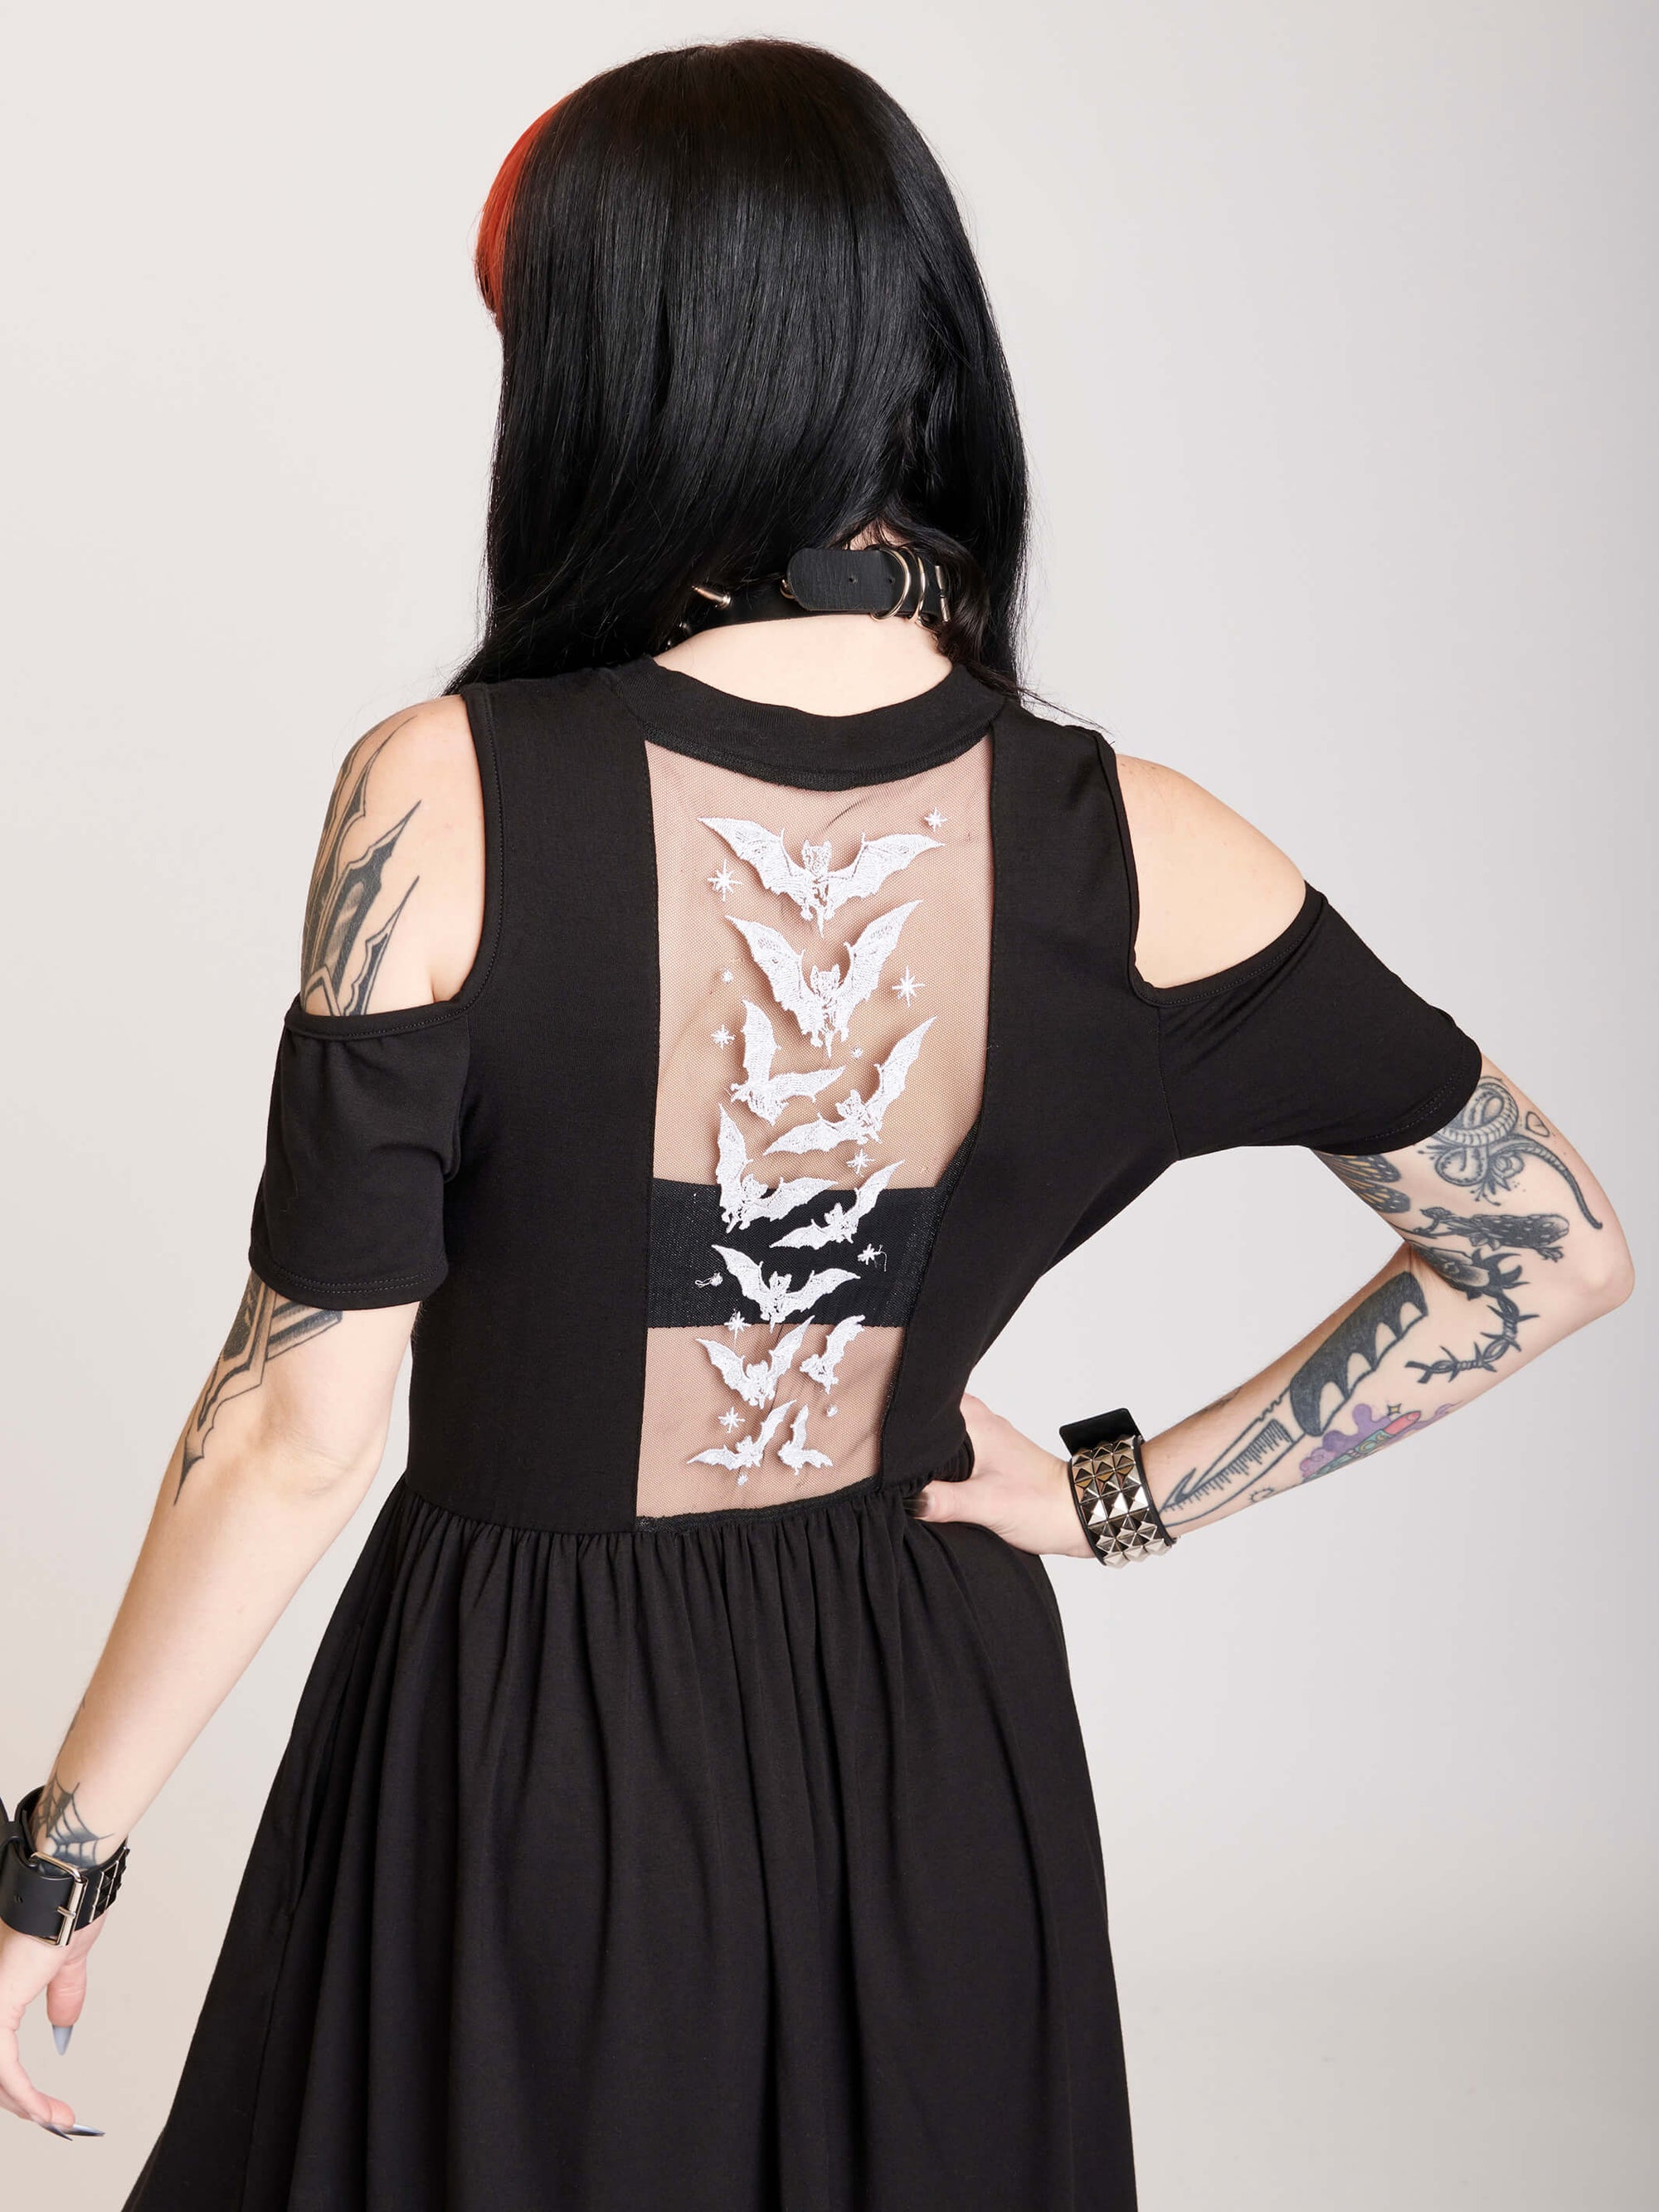 cold shoulder dress with bat embroidered mesh back panel.